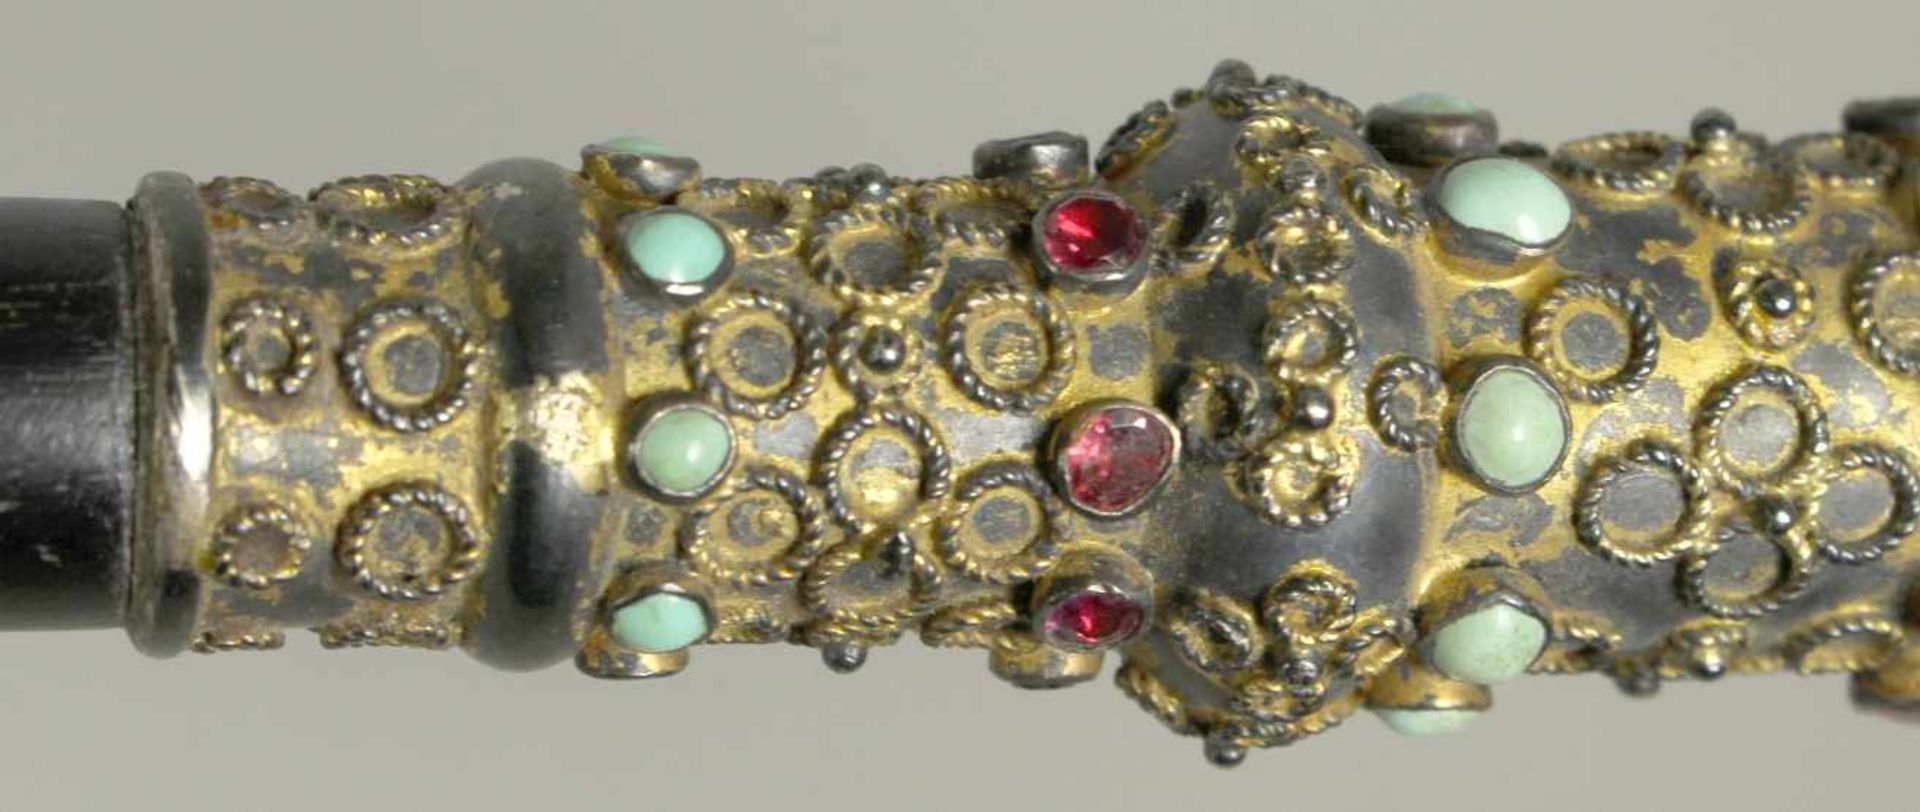 Spazierstock, wohl osmanisch, Ende 19. Jh., Griff in Form eines Zierbalusters aus Silber, - Bild 3 aus 3